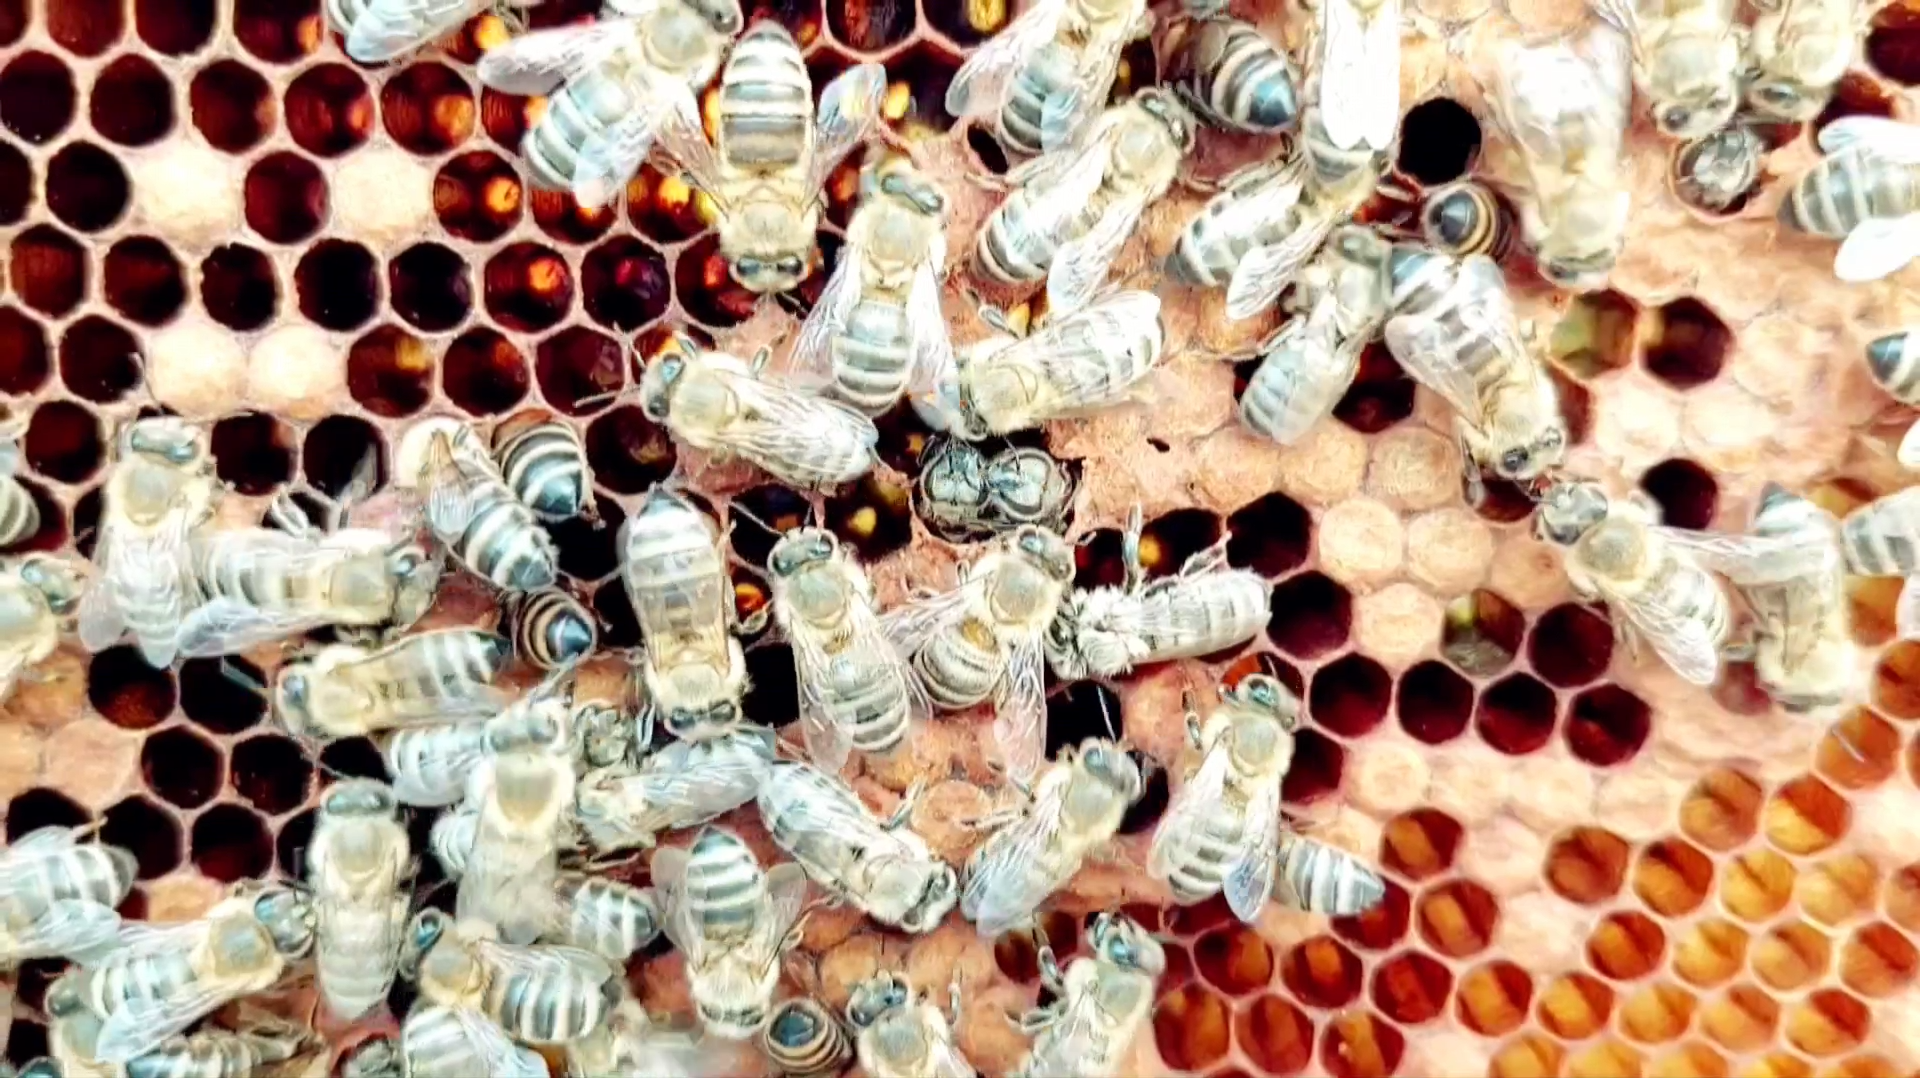 Toto fascinujúce VIDEO sme natočili v našom úle na sade!